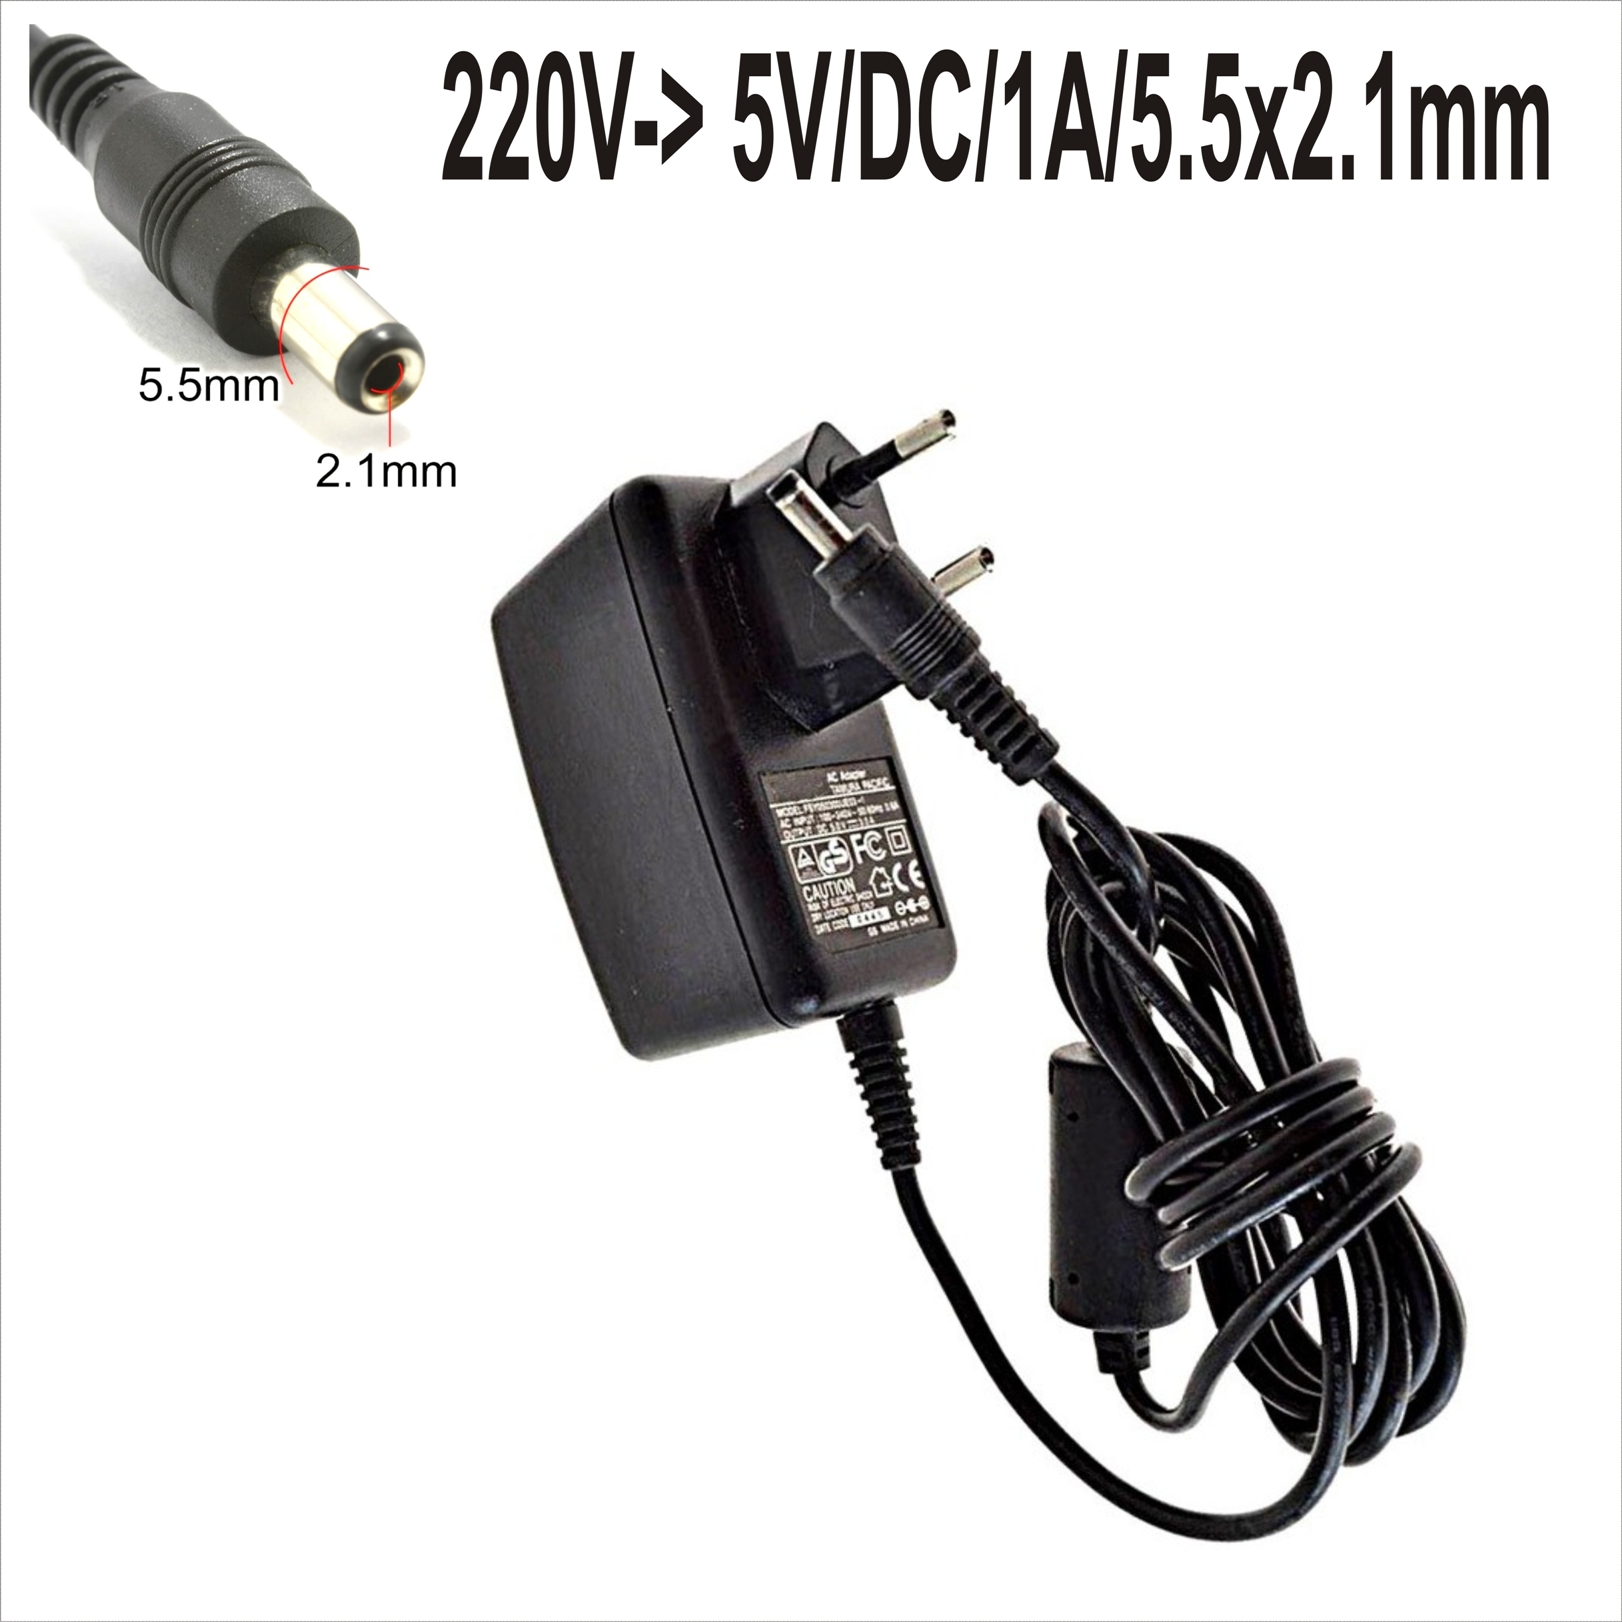 Захранващ адаптер 220V-> 5V/DC/1A/5.5x2.1mm